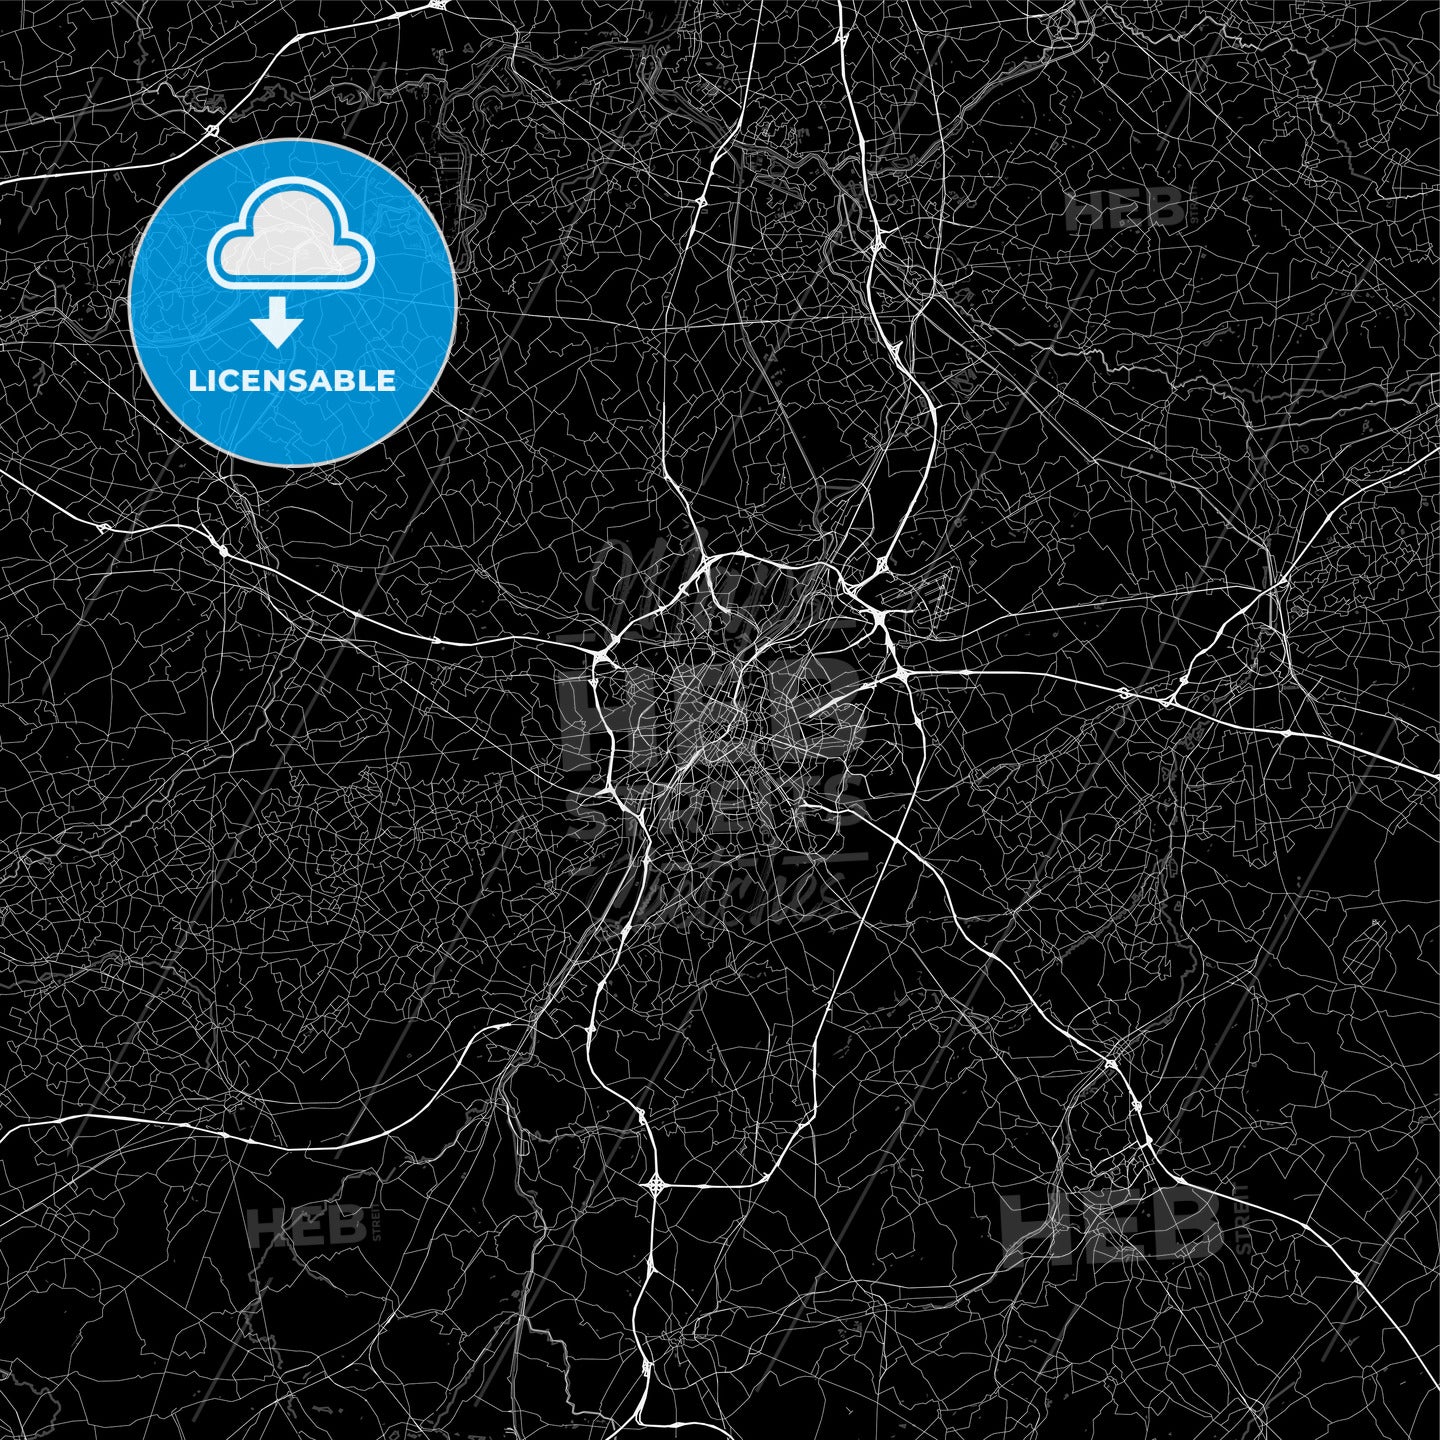 Dark area map of Brussels, Belgium